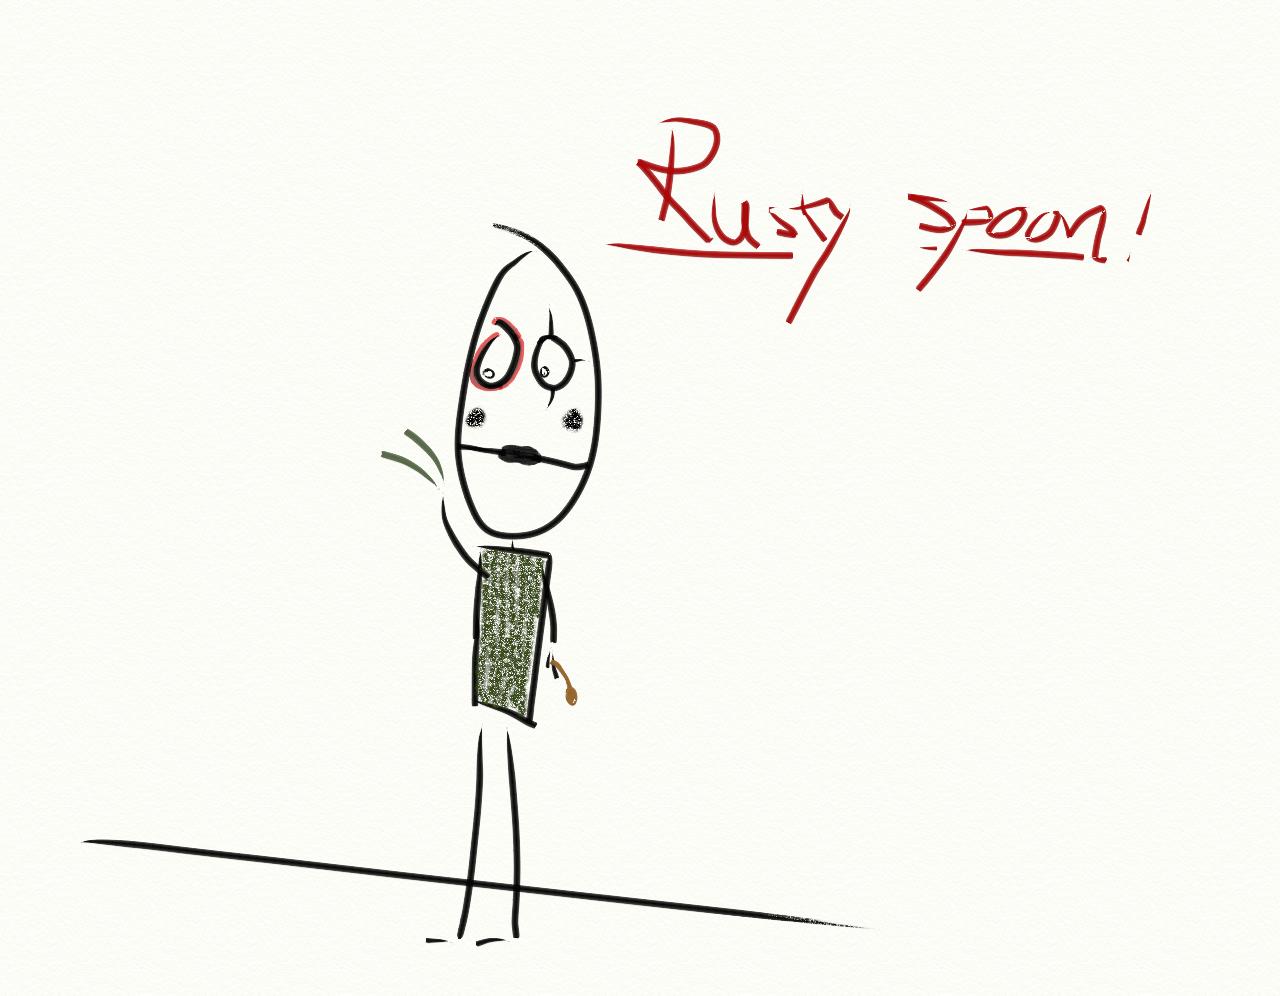 [Rusty+Spoon.jpg]